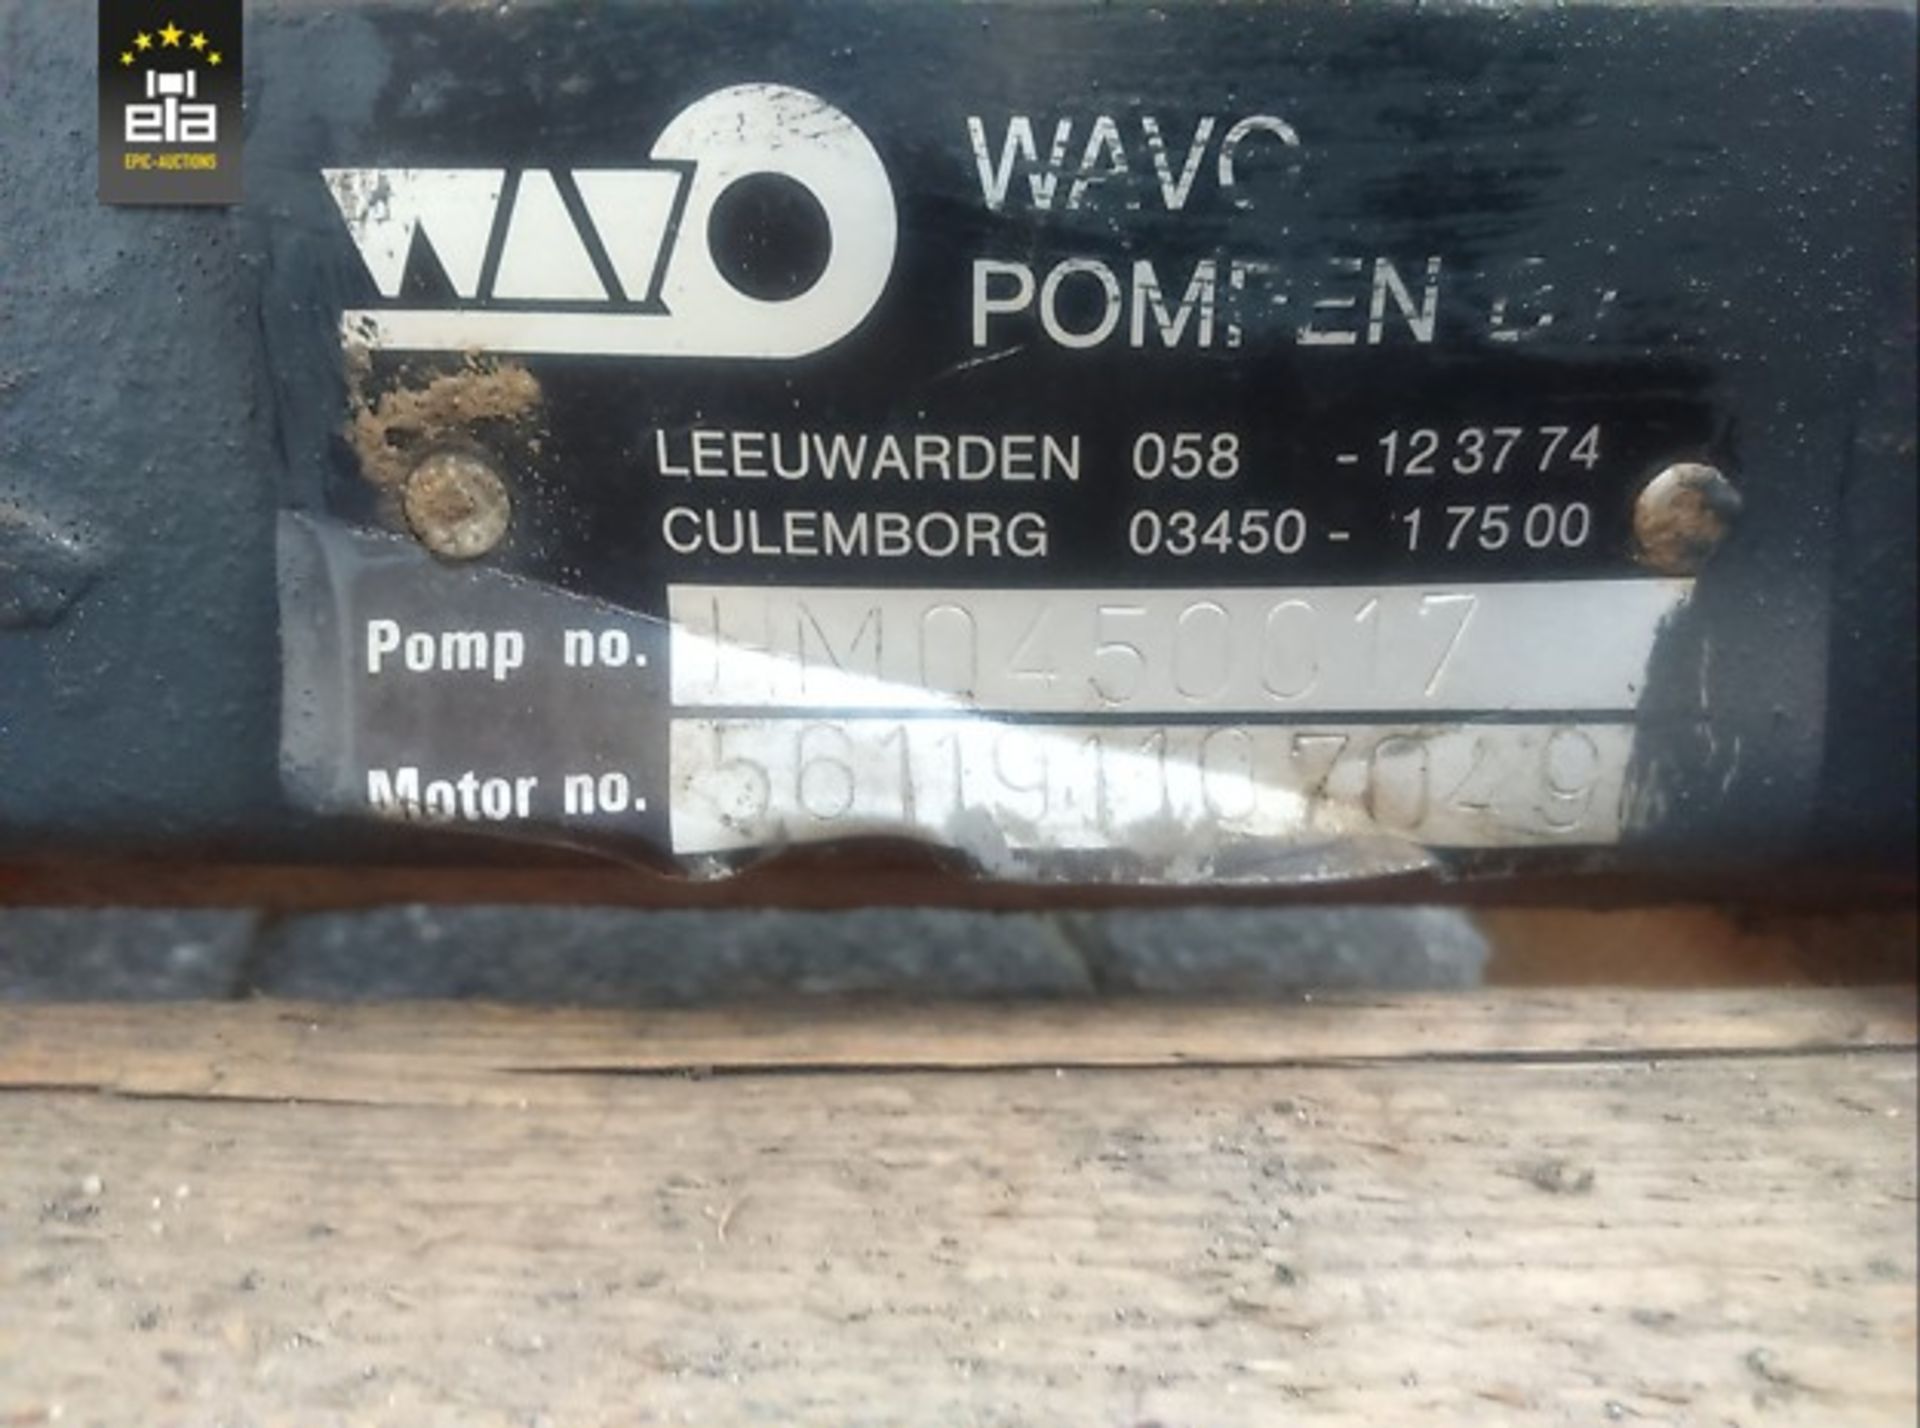 Wavo waterpomp met Hatz motor 20140648 - Image 7 of 9